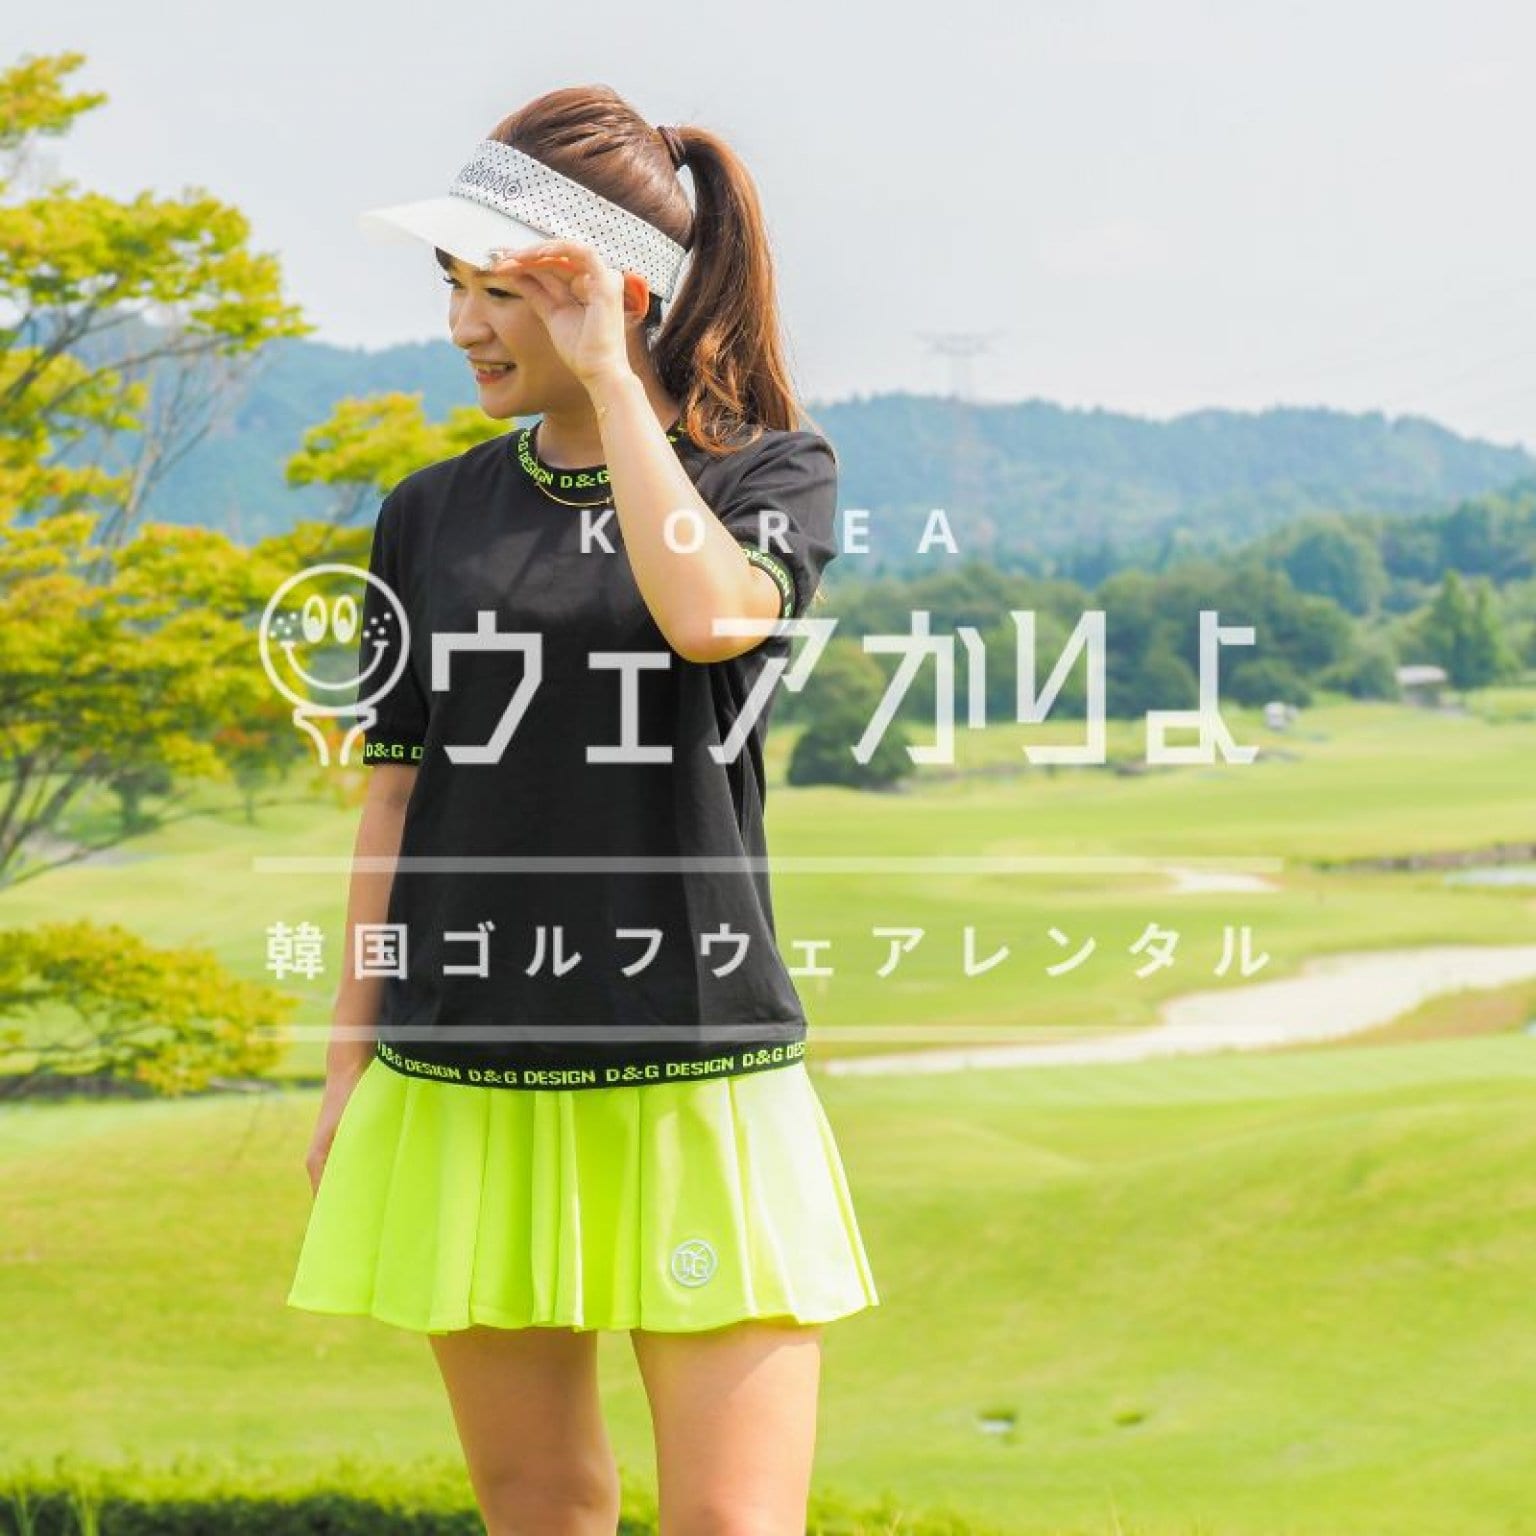 ビビットグリーン フレアスカート ゴルフスカート Sサイズ DL ウエアかりよ 韓国ゴルフウエアレンタル